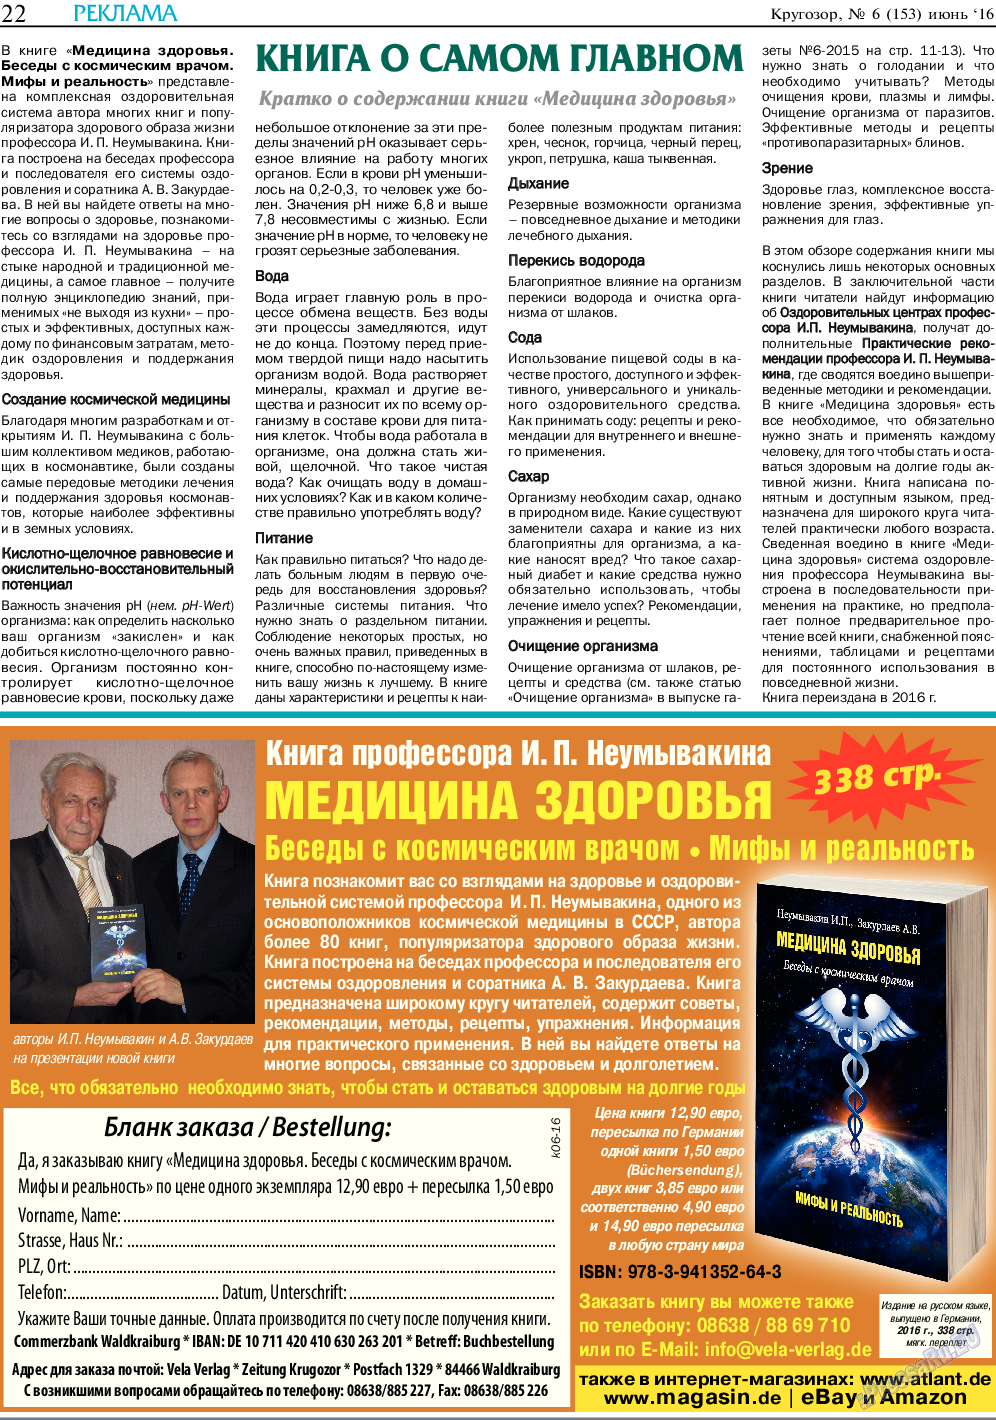 Кругозор, газета. 2016 №6 стр.22